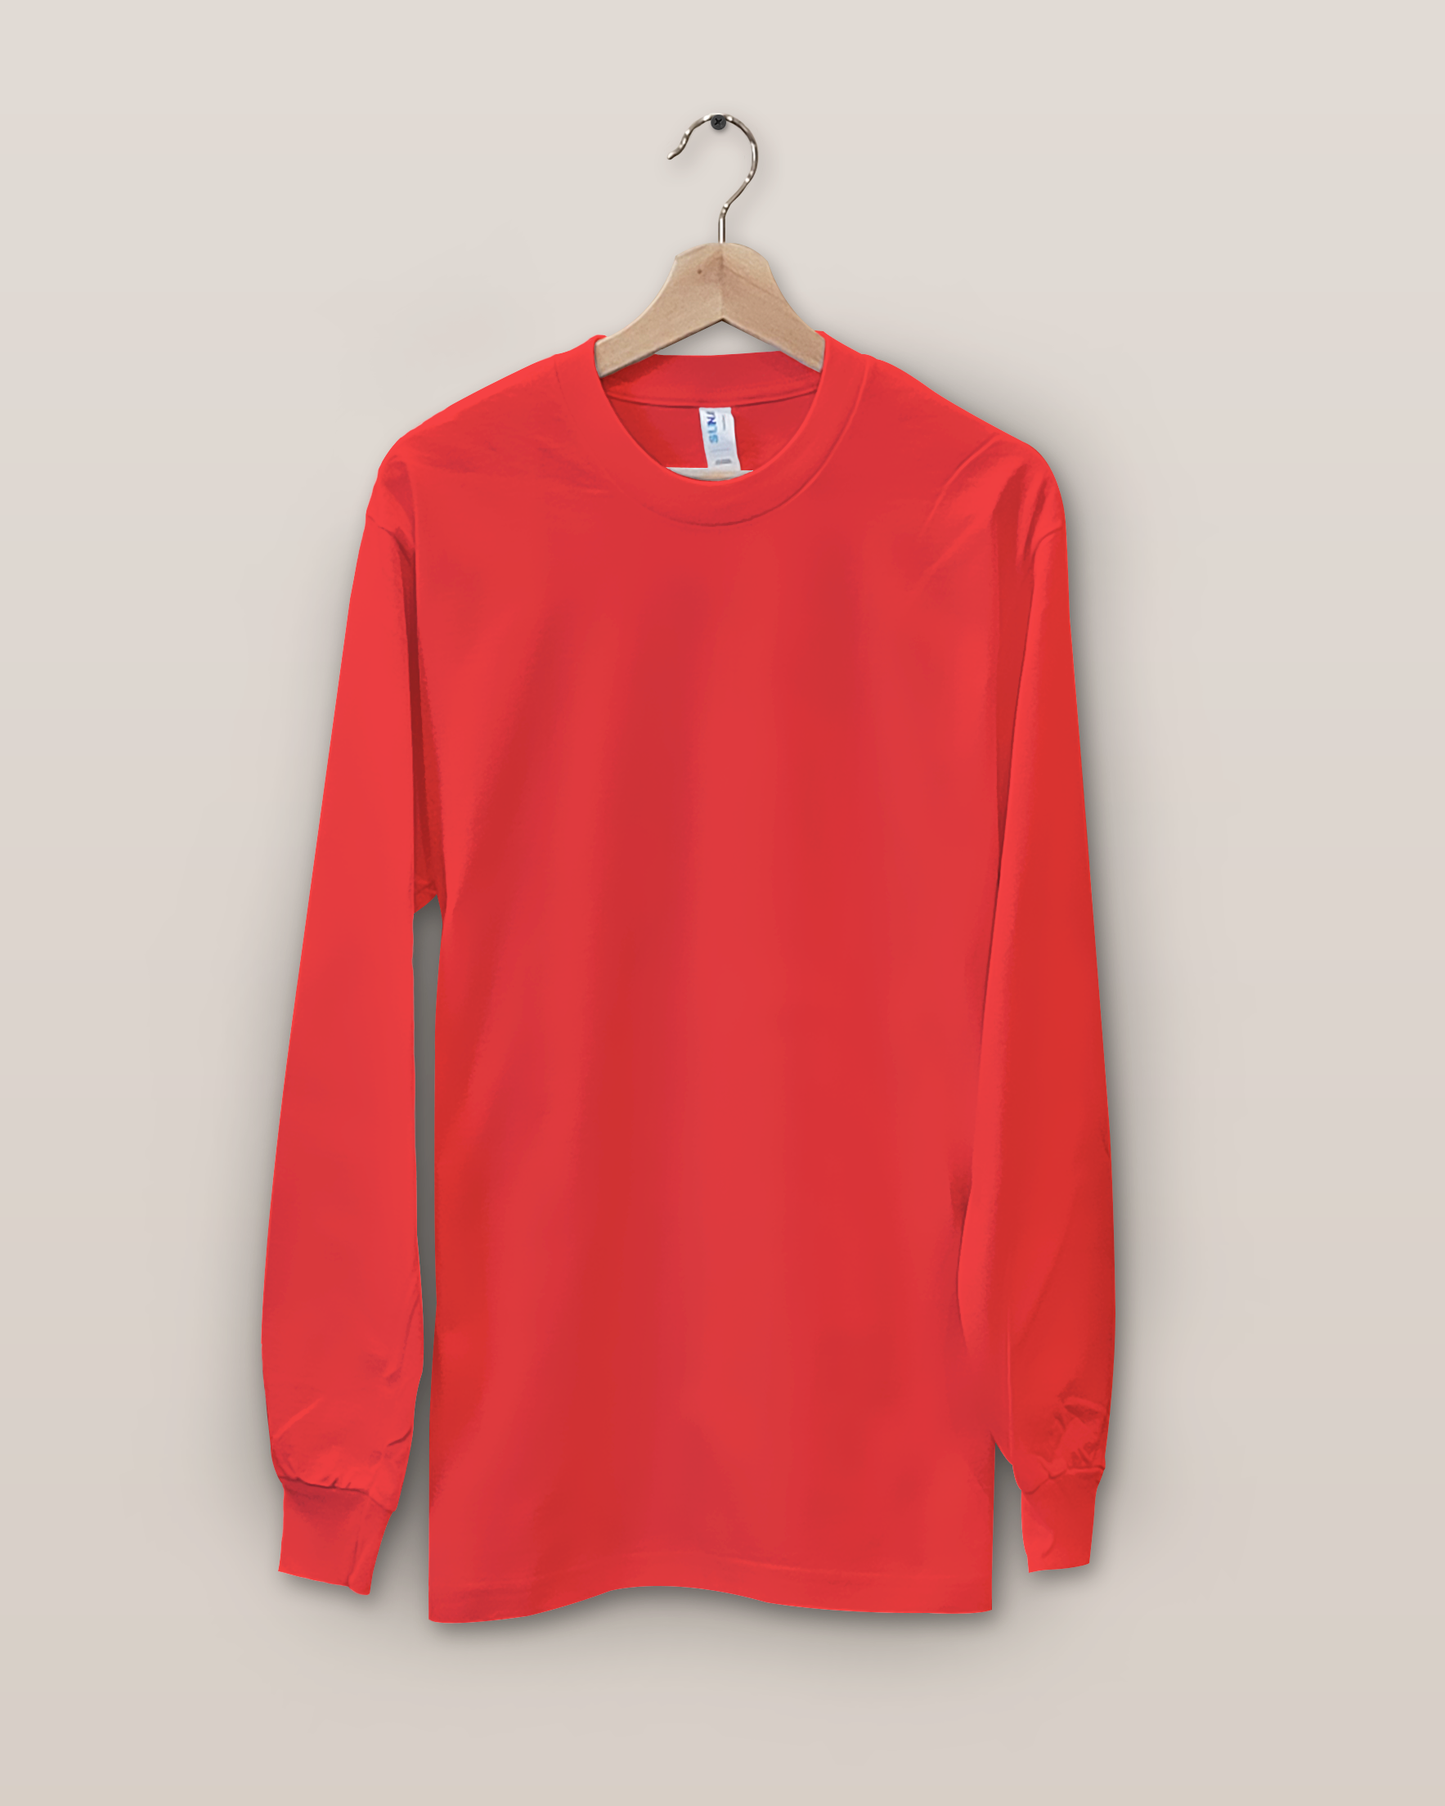 Suna Cotton® Red Long Sleeve T-shirt